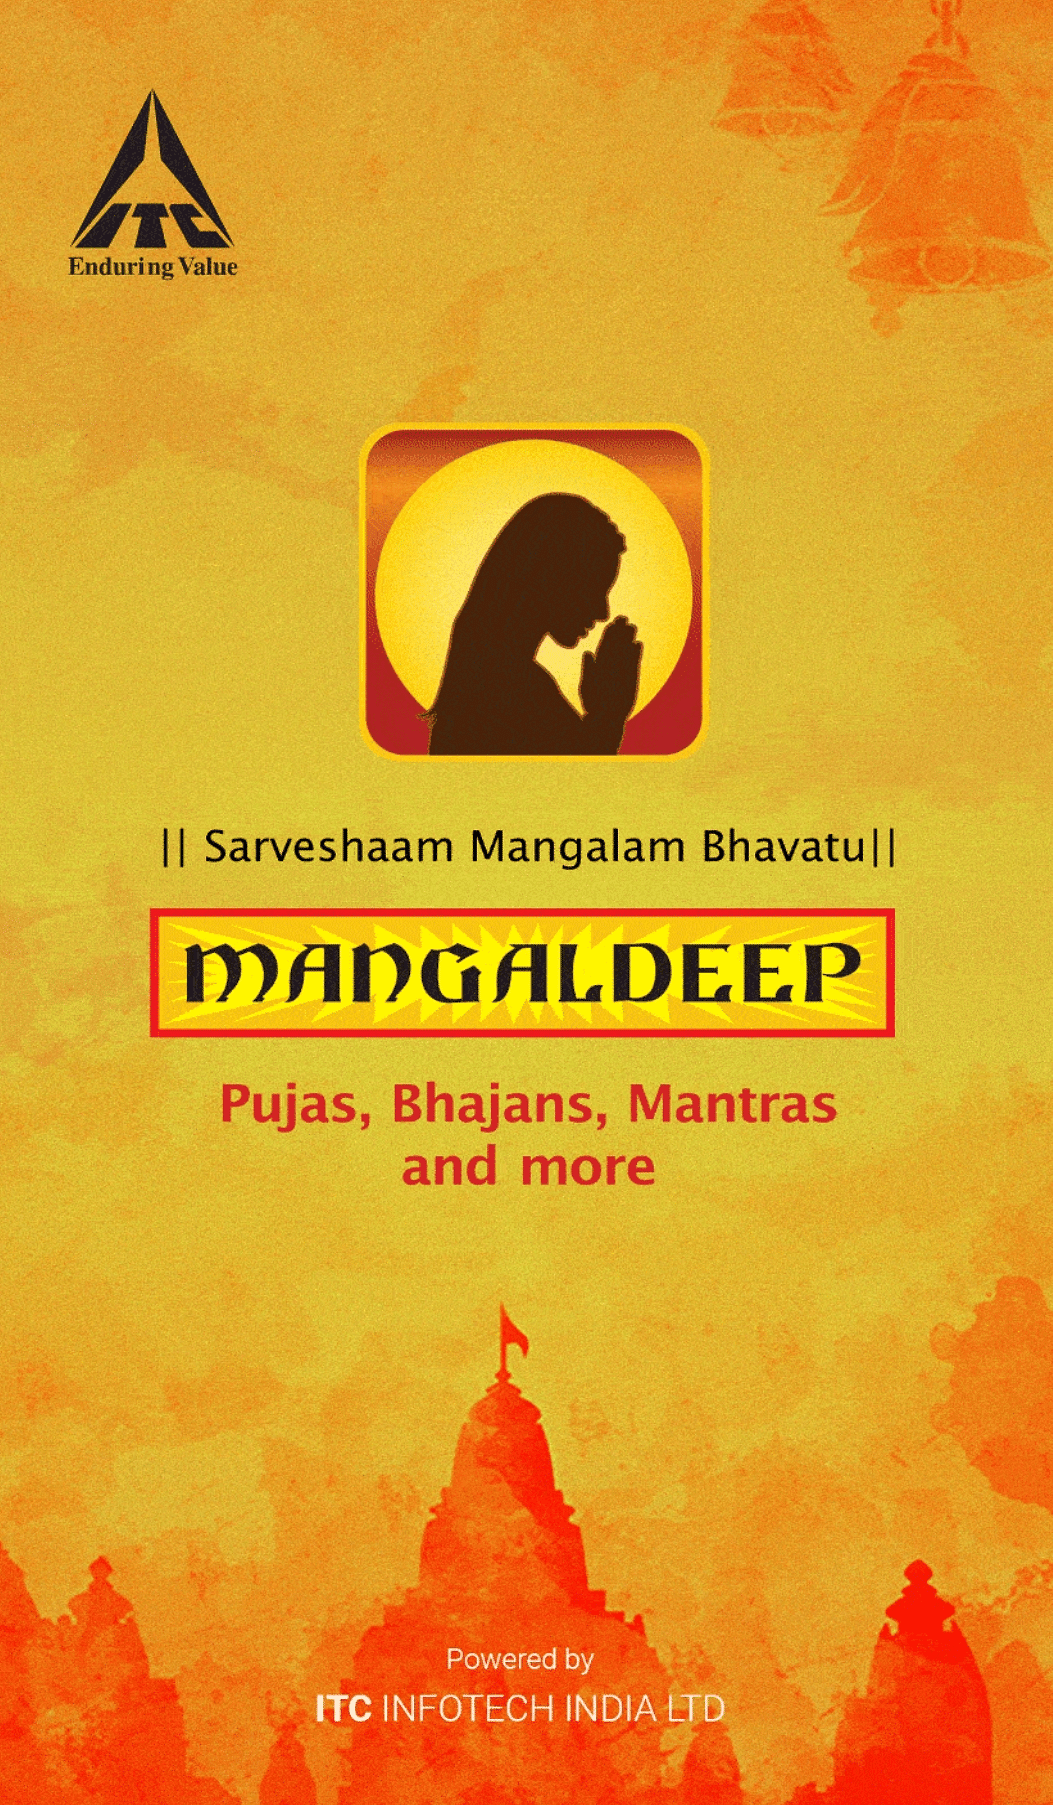 The Mangaldeep App